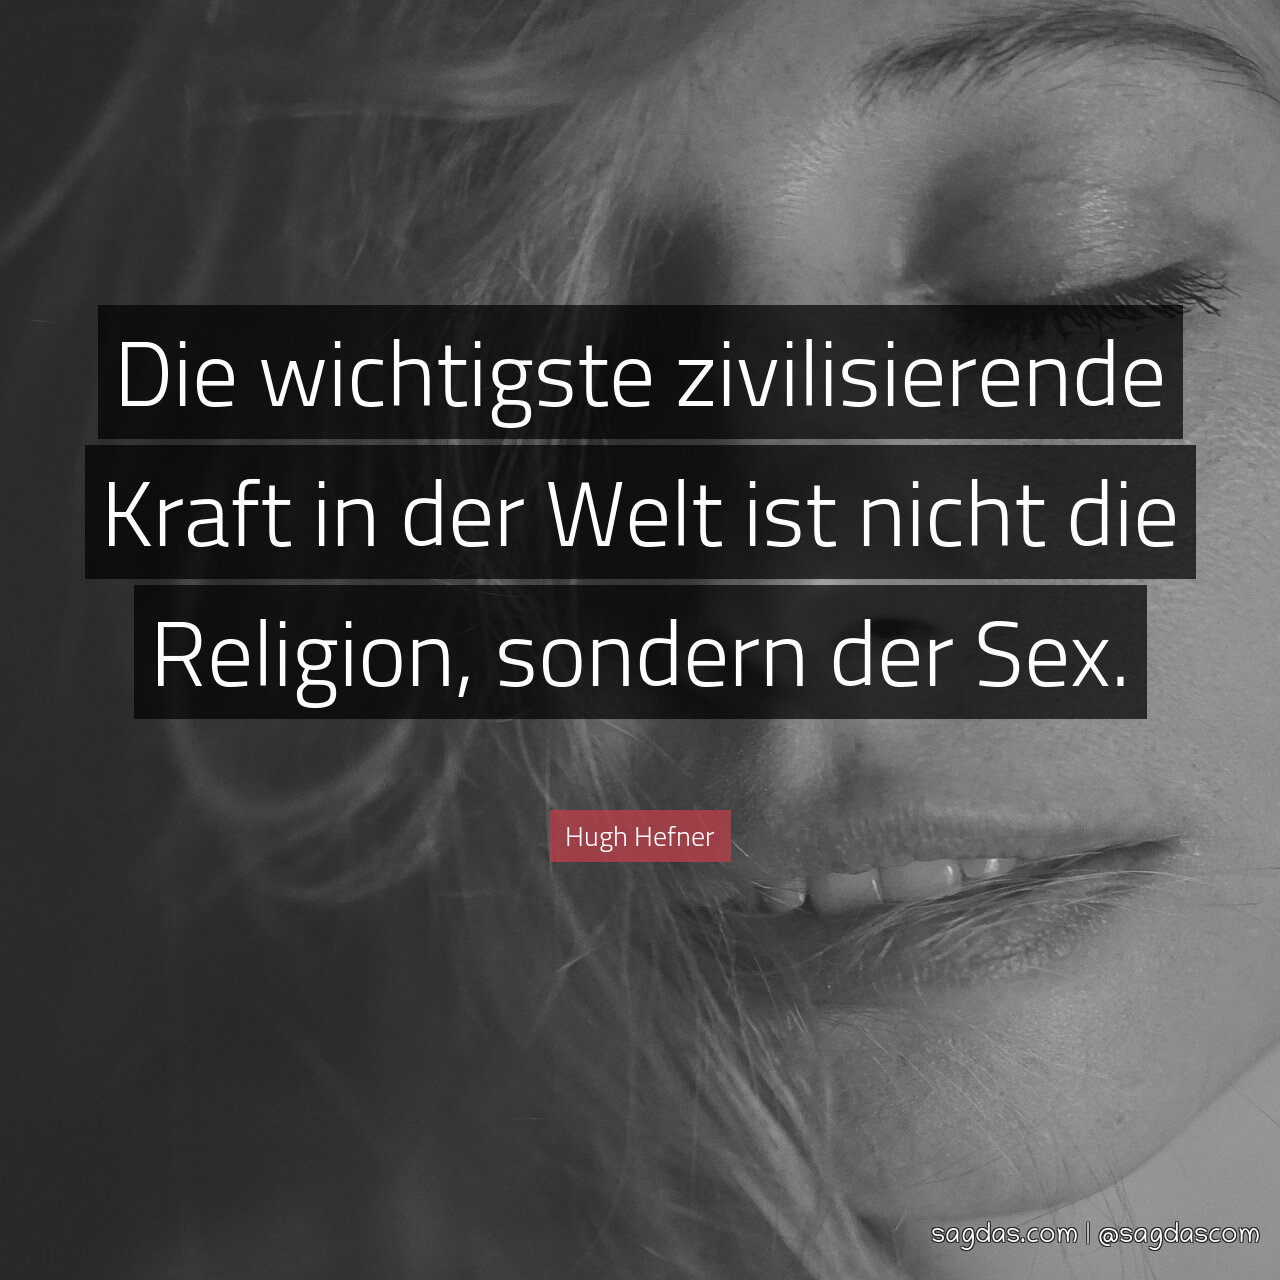 Die wichtigste zivilisierende Kraft in der Welt ist nicht die Religion, sondern der Sex.